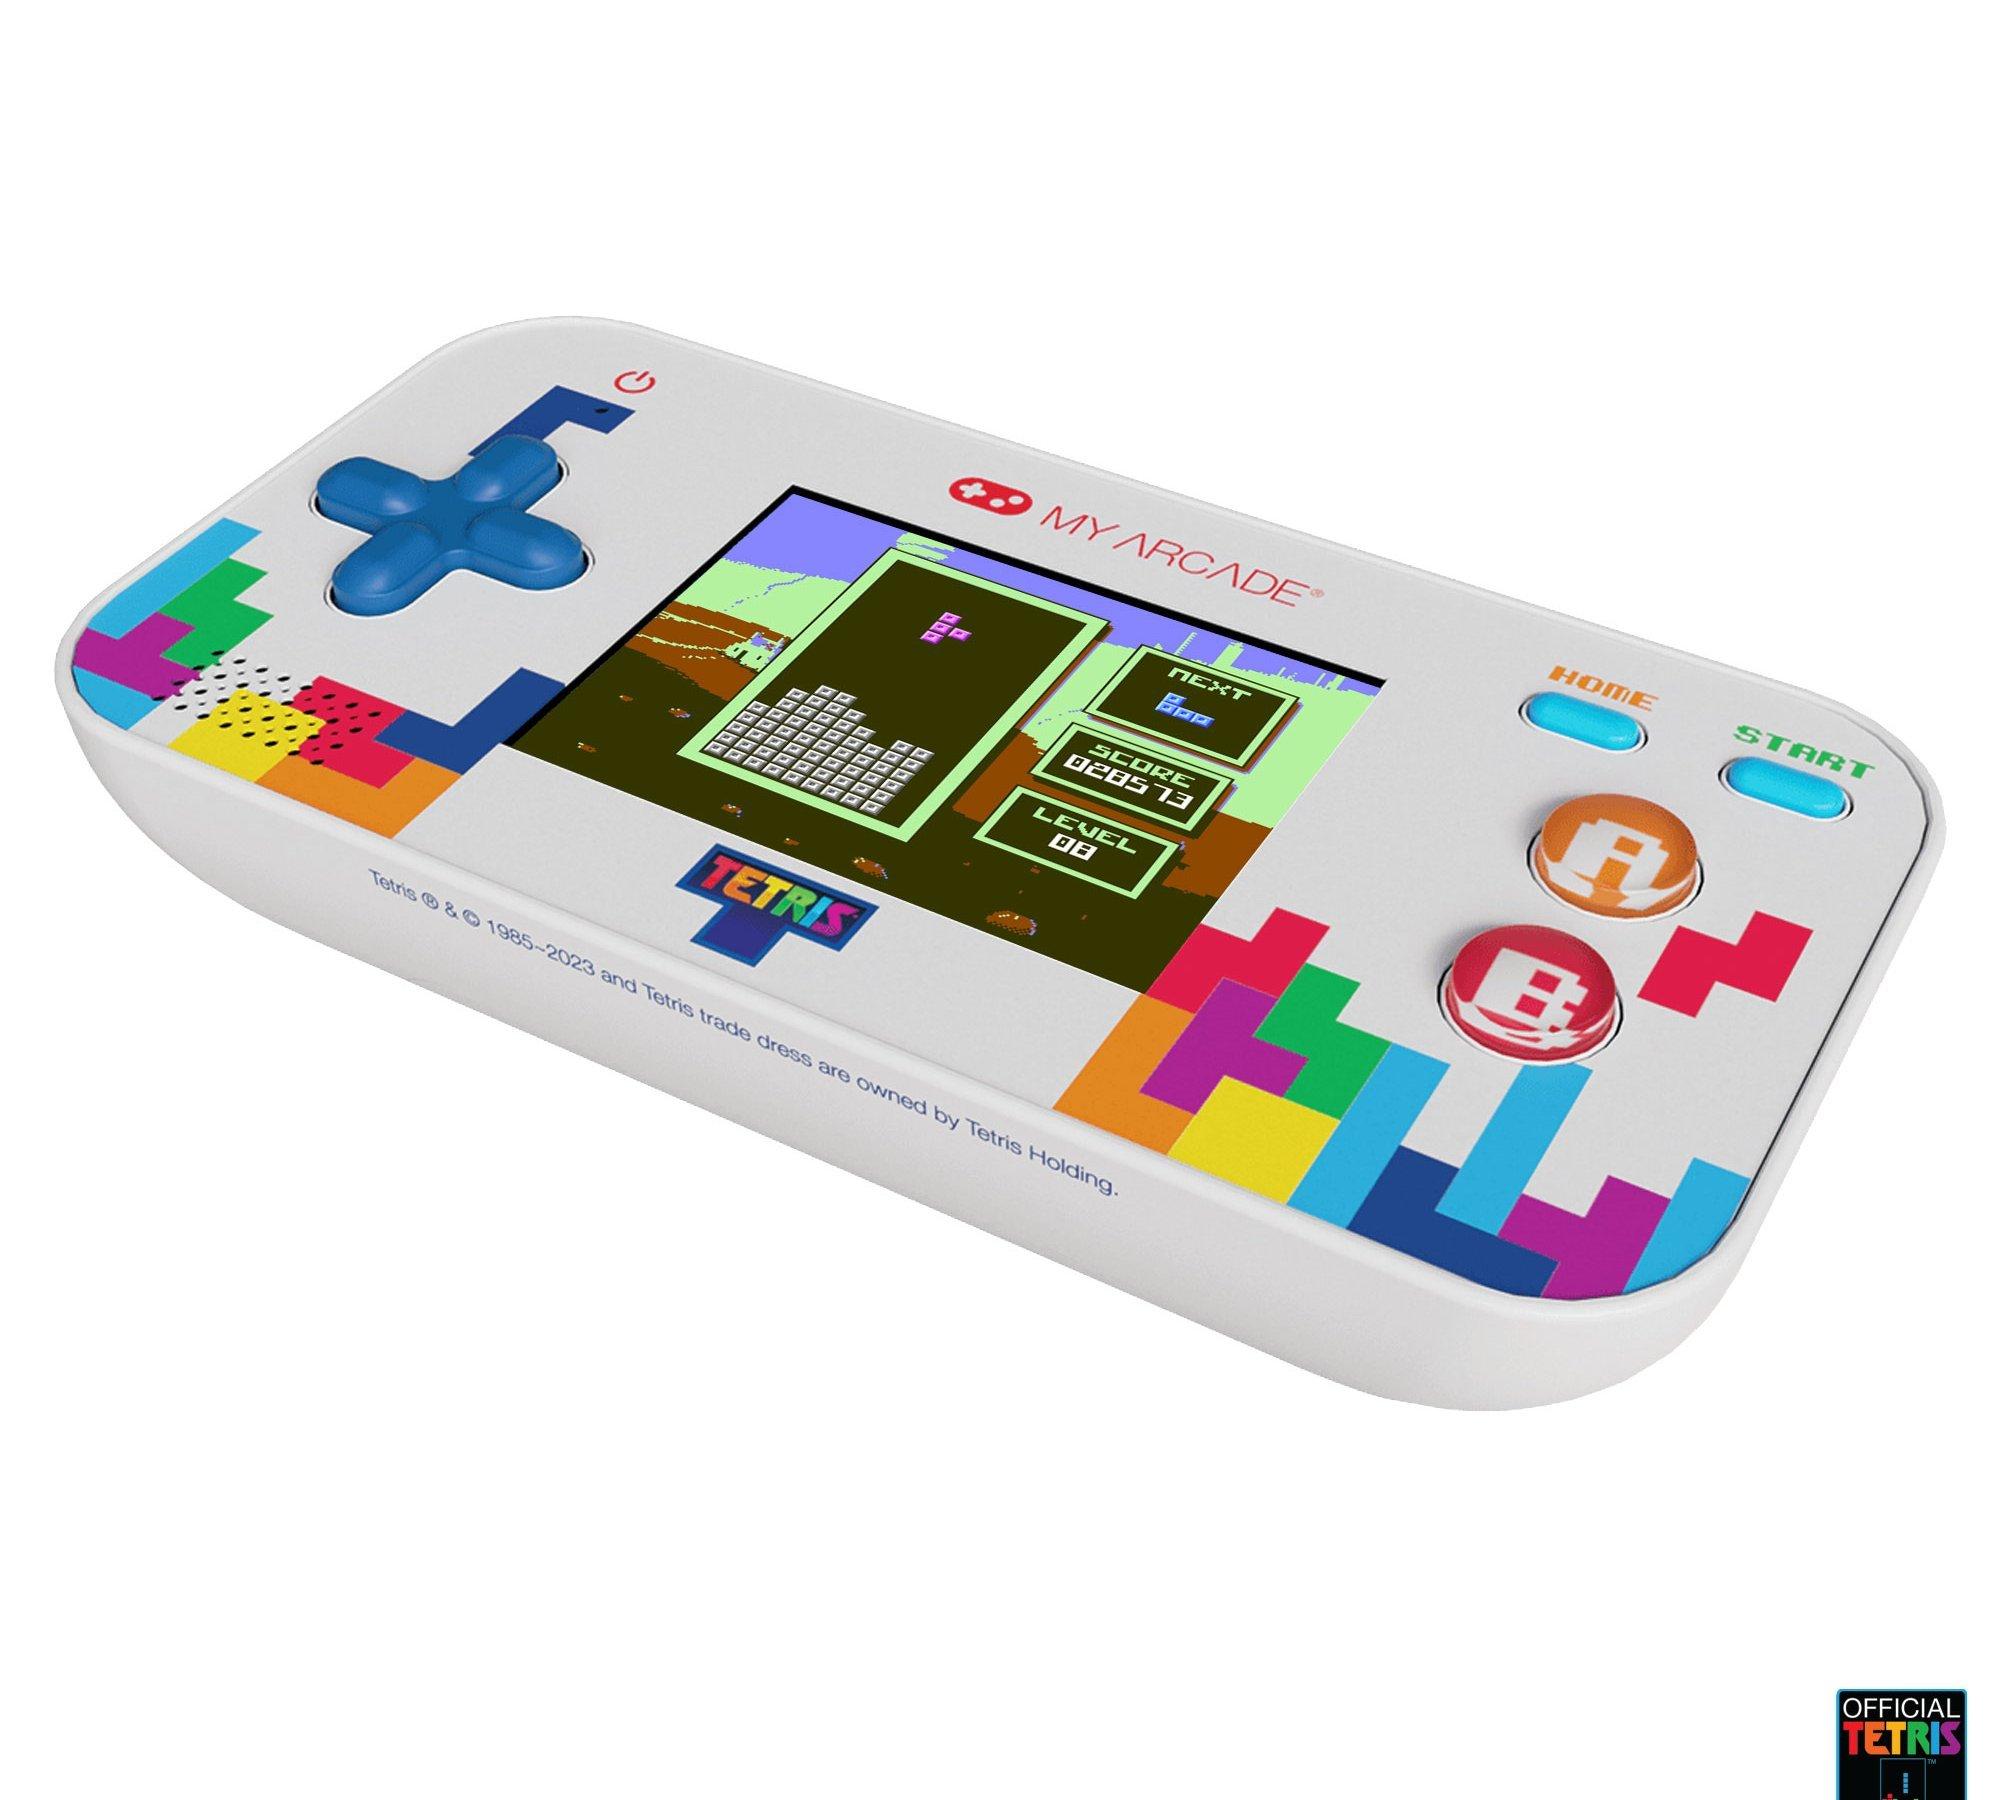 🕹️ Play Retro Games Online: Tetris Classic (DOS)